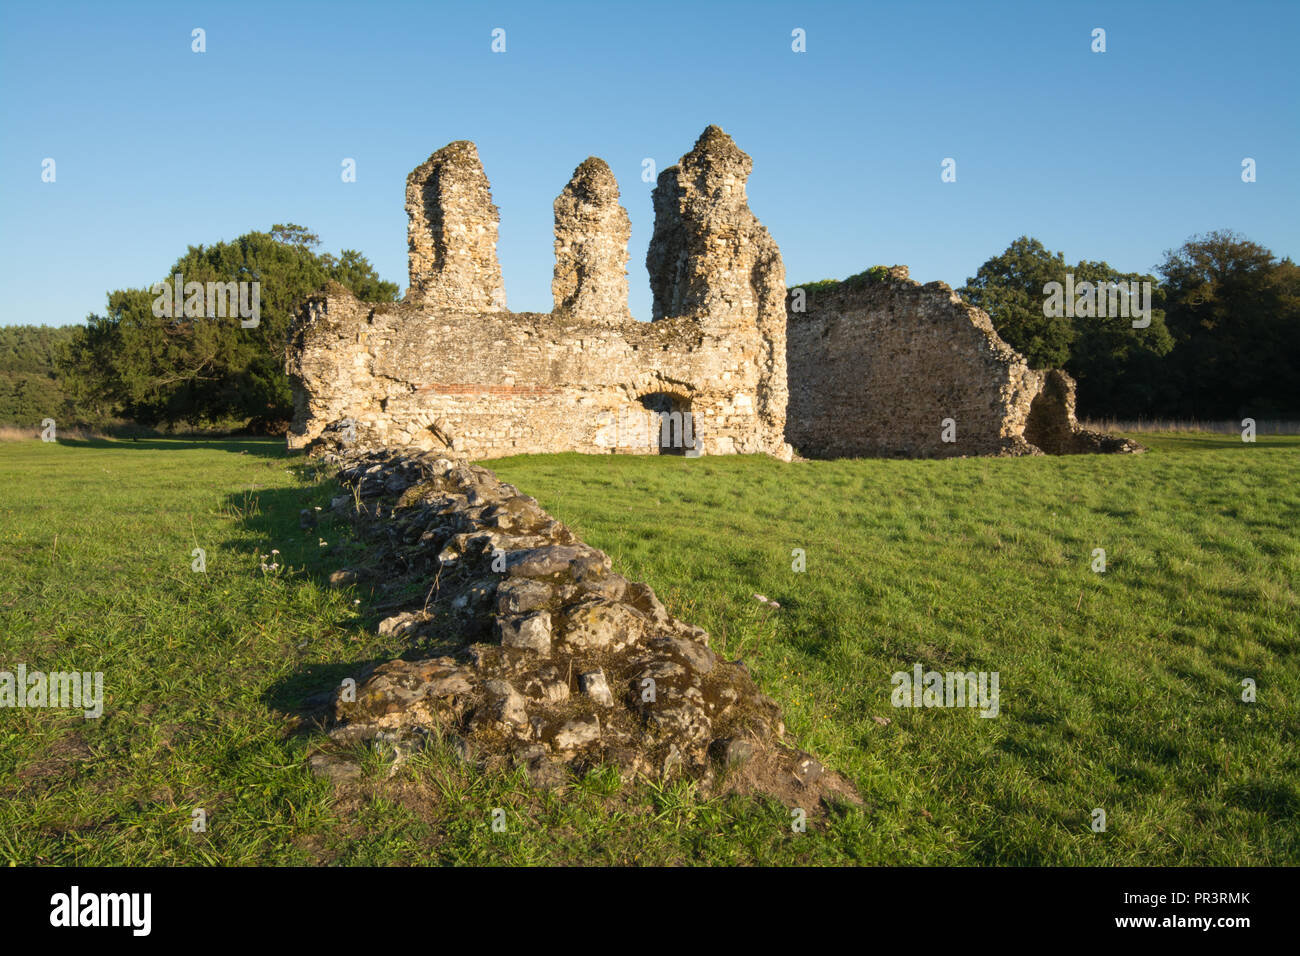 Abbaye de Waverley, les ruines du premier monastère cistercien construit en Angleterre (fondée en 1128) dans la région de Surrey, UK Banque D'Images